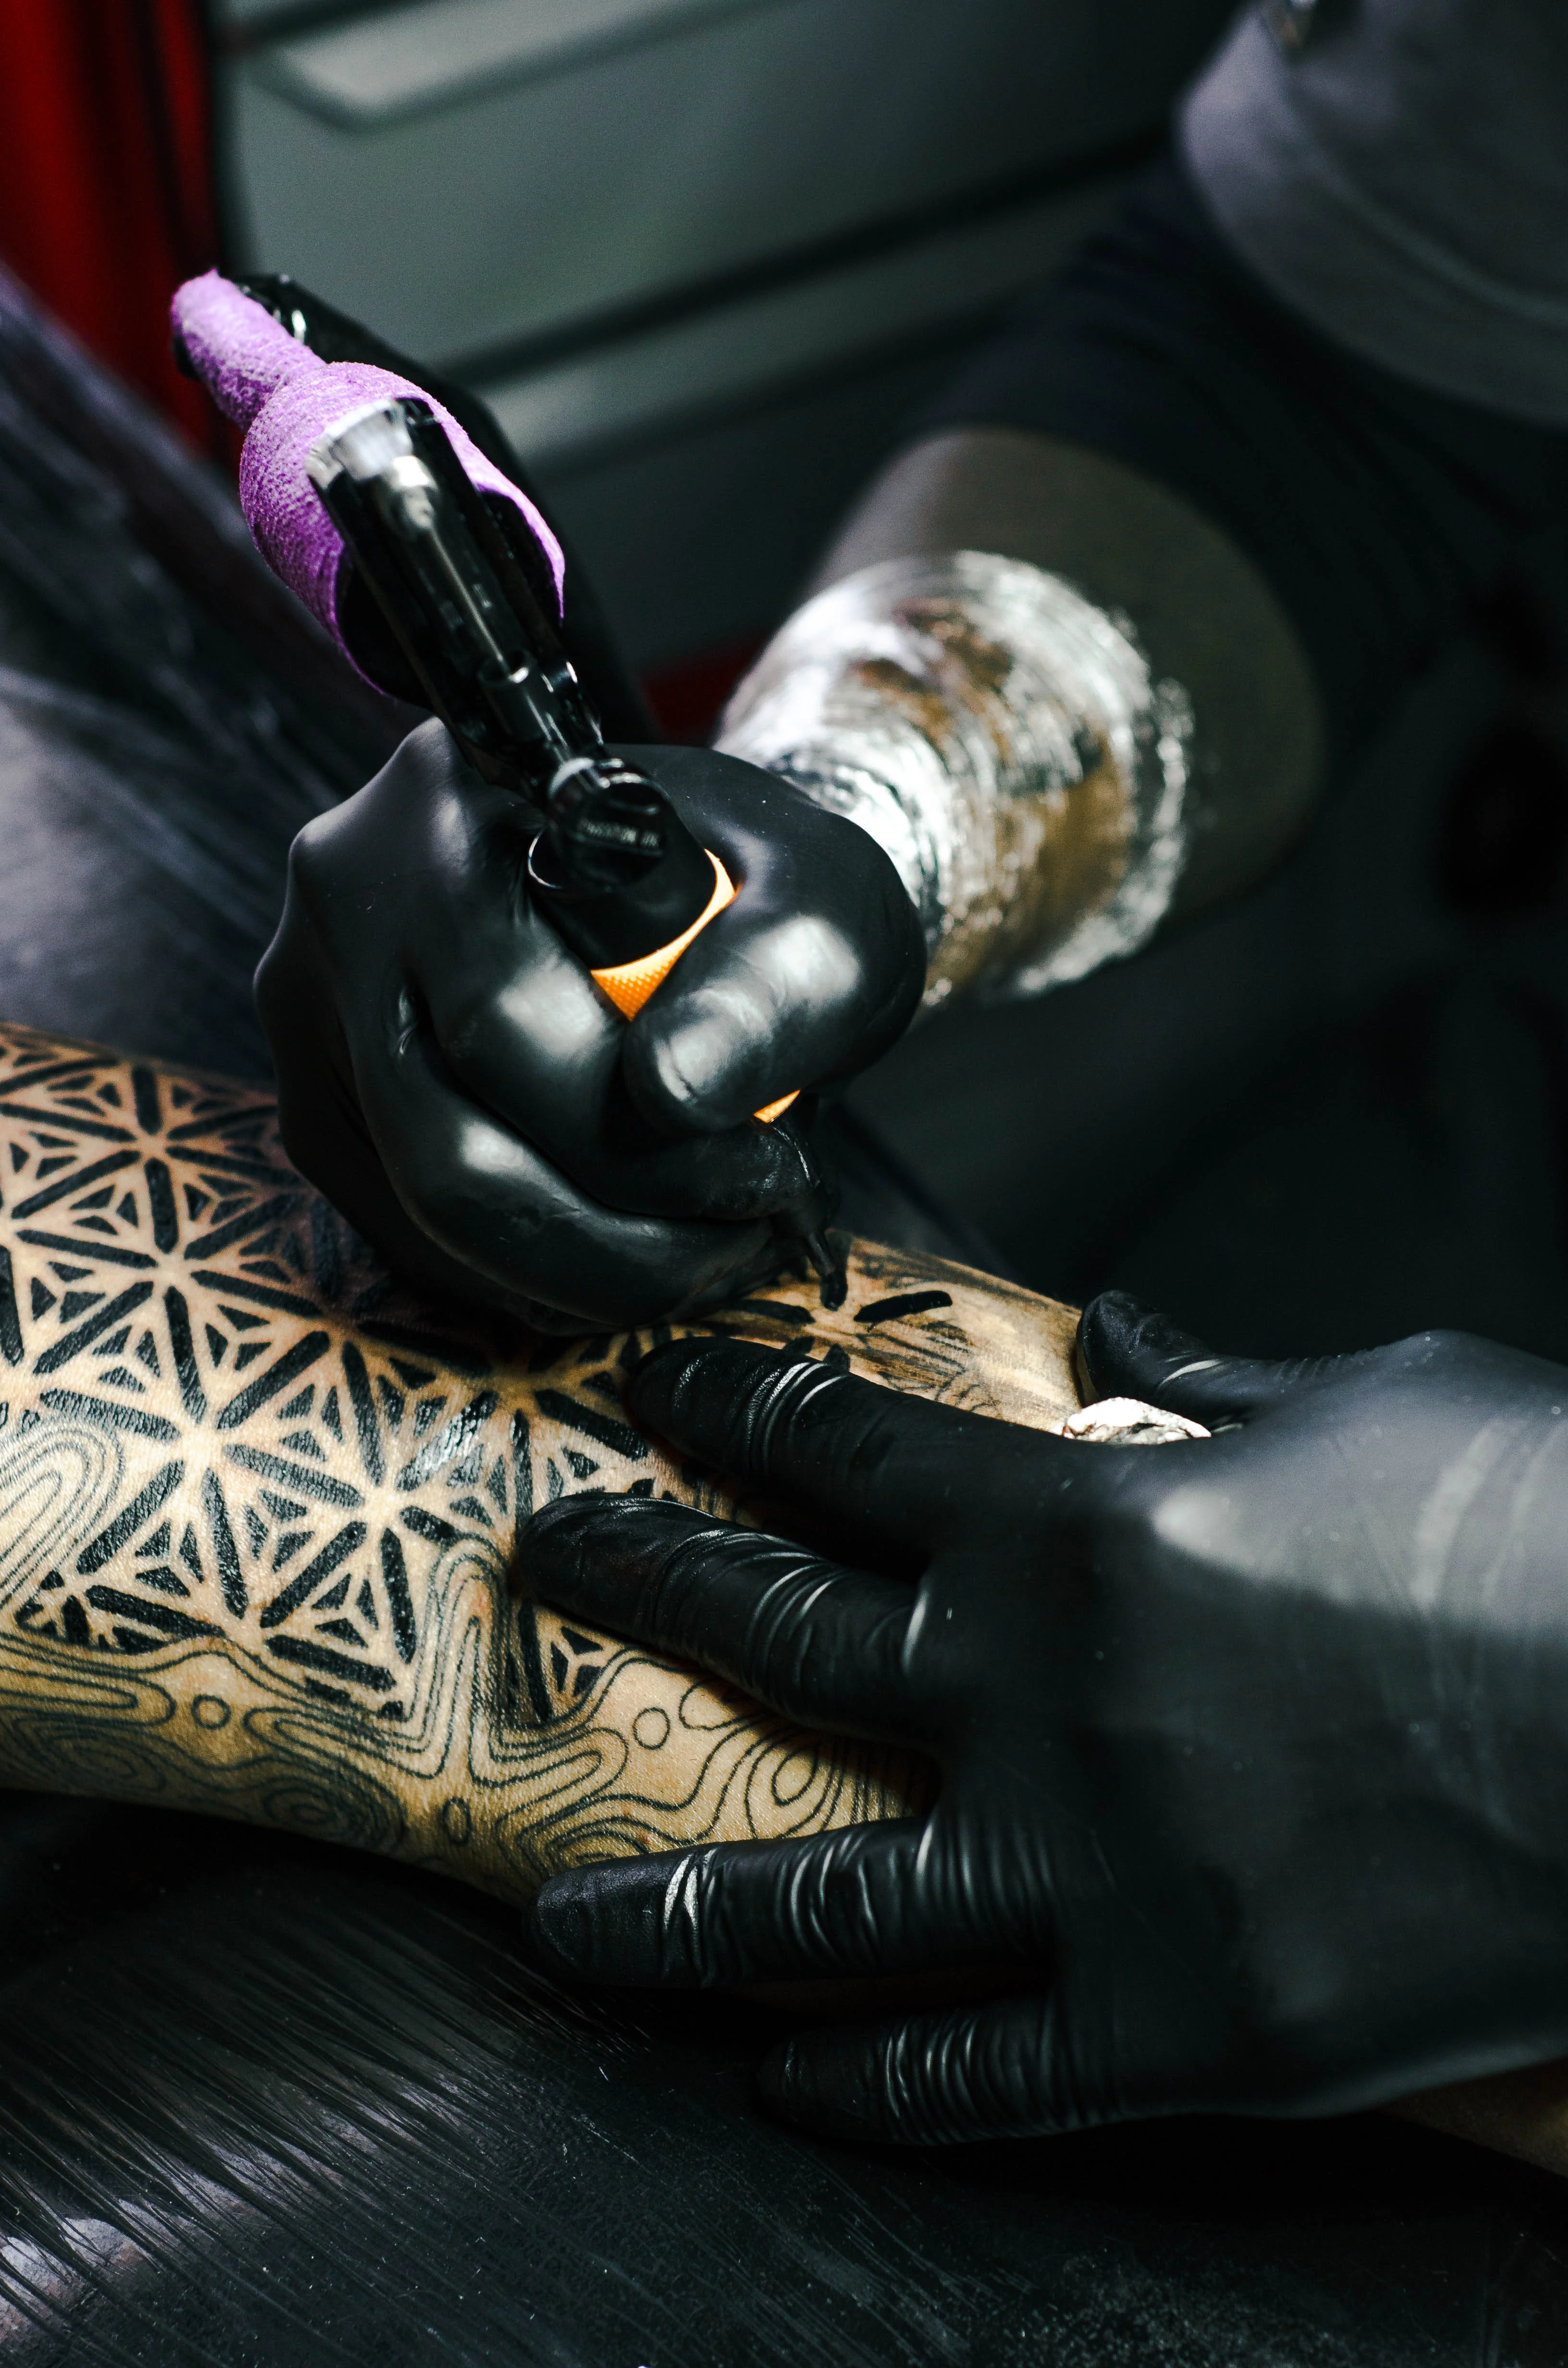 Tattoo artist inking the latest tattoo trends.